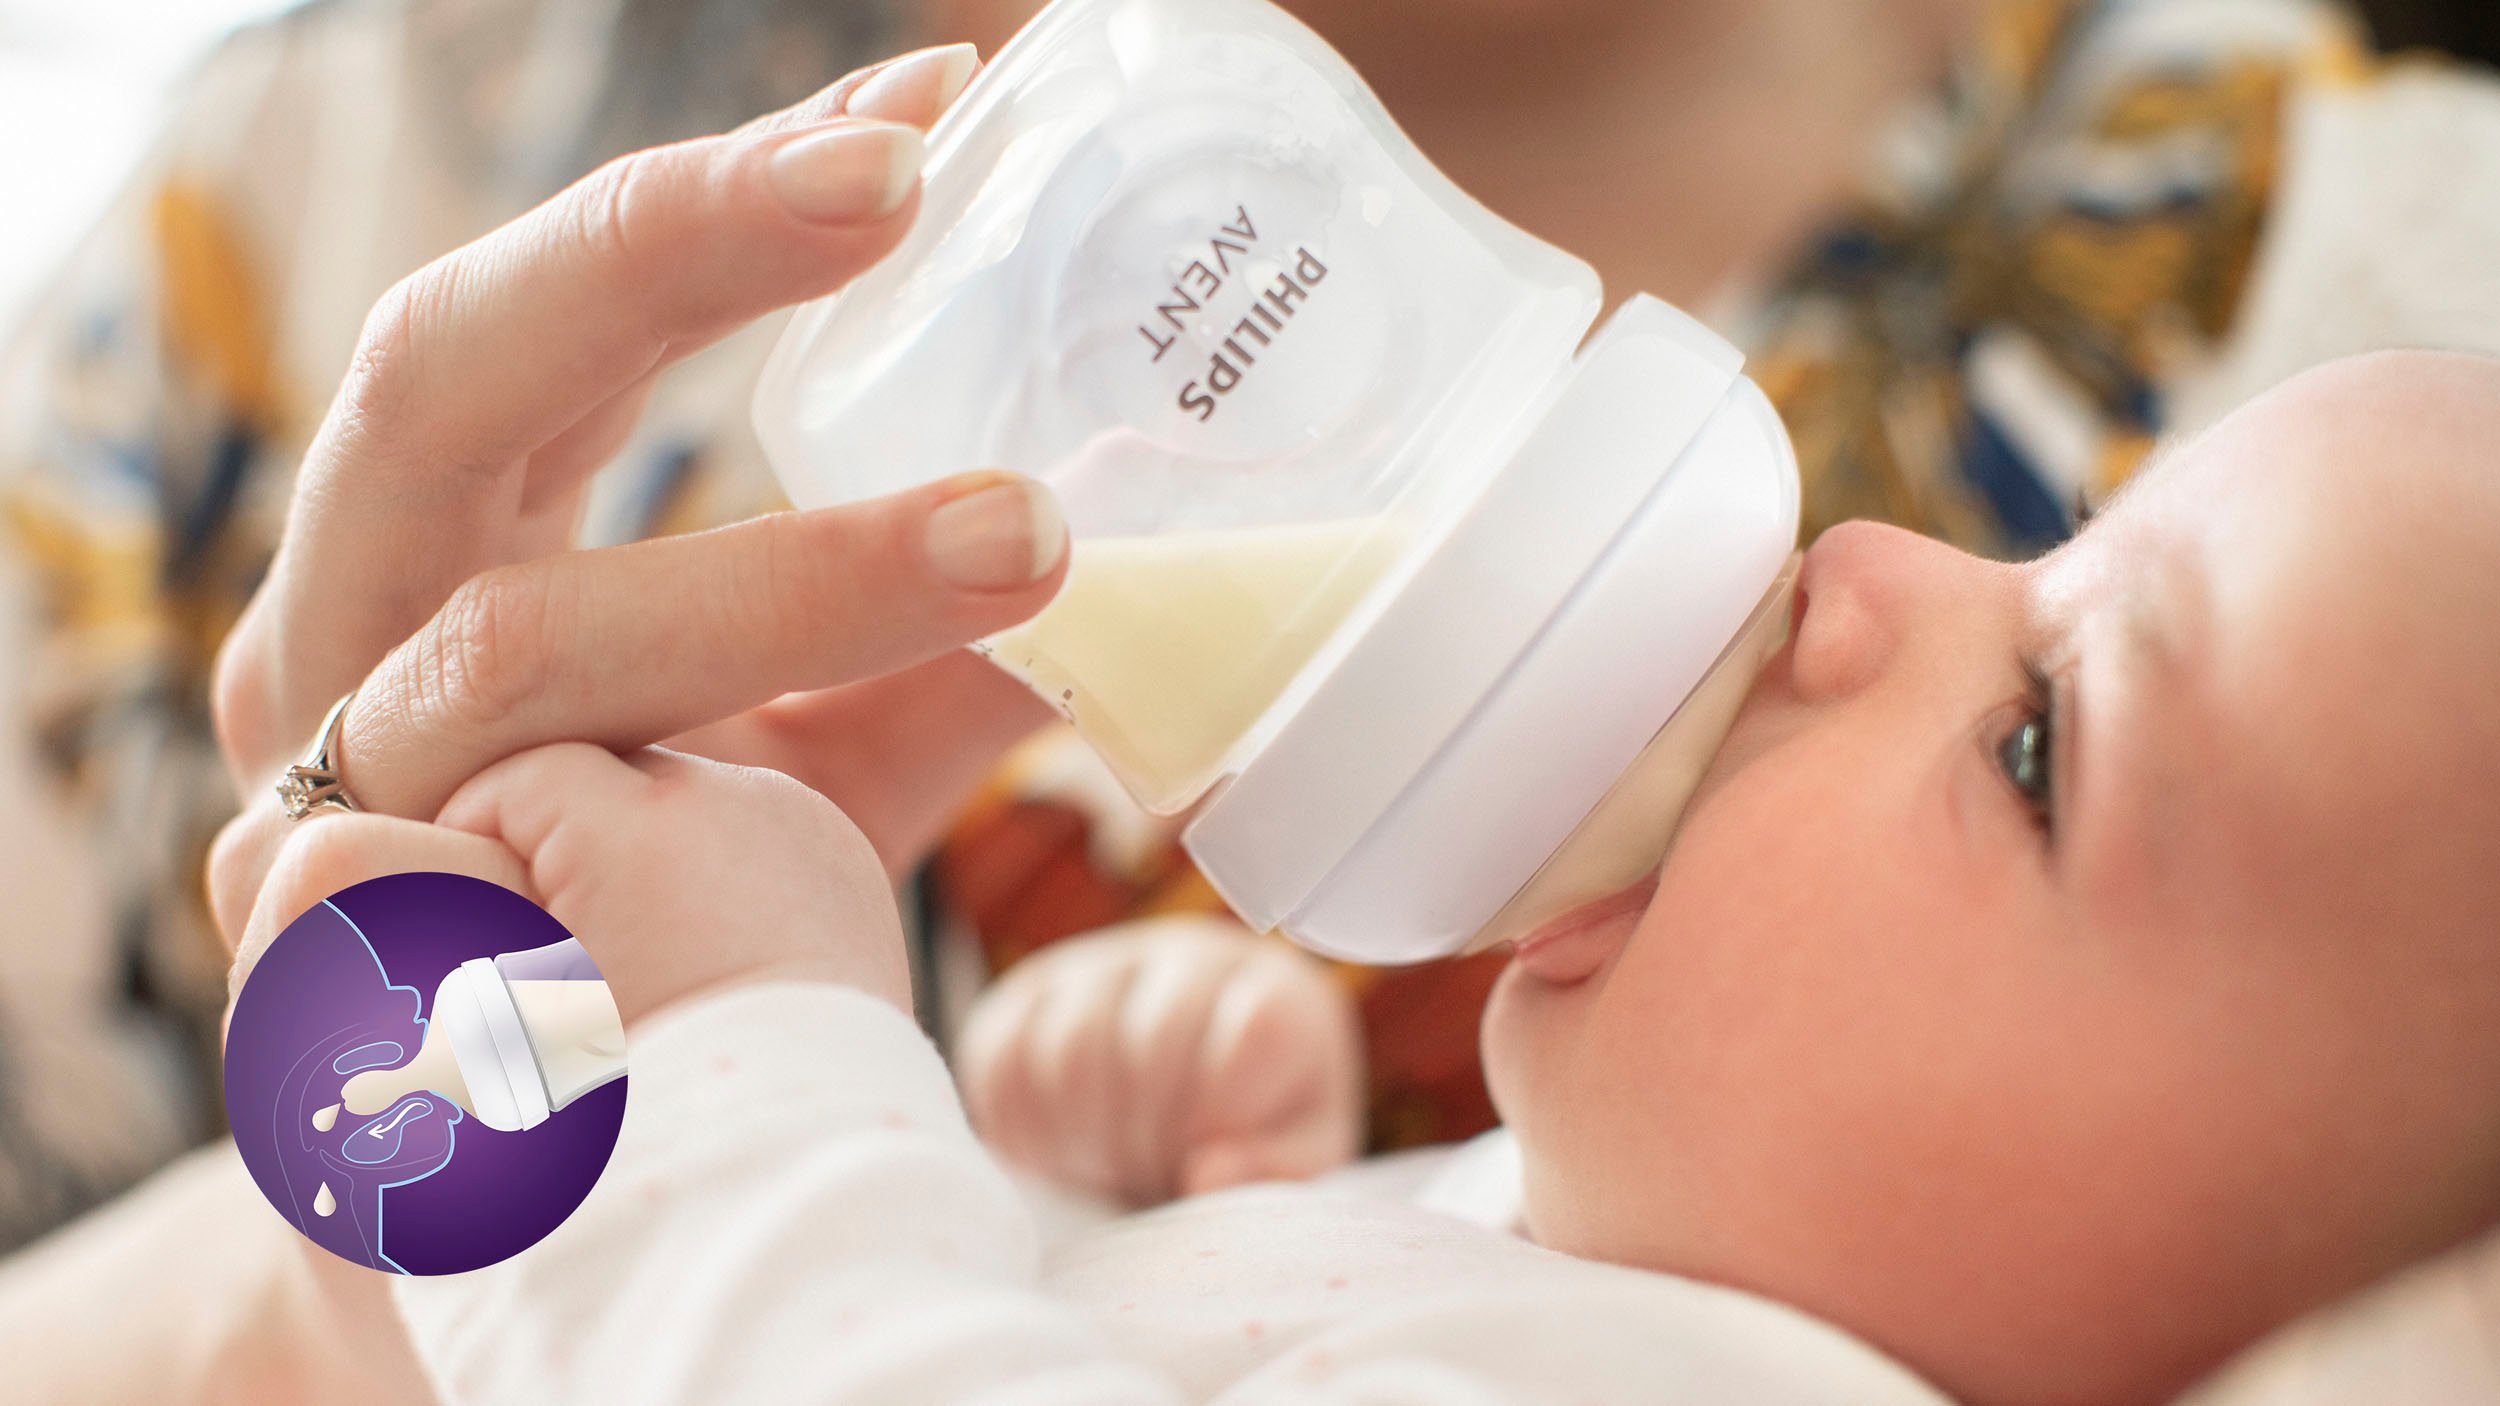 Philips AVENT Babyflasche Natural Glas ultra 3 Glas Neugeborene soft SCD878/11, Schnuller Starter-Set und aus Response Flaschen für